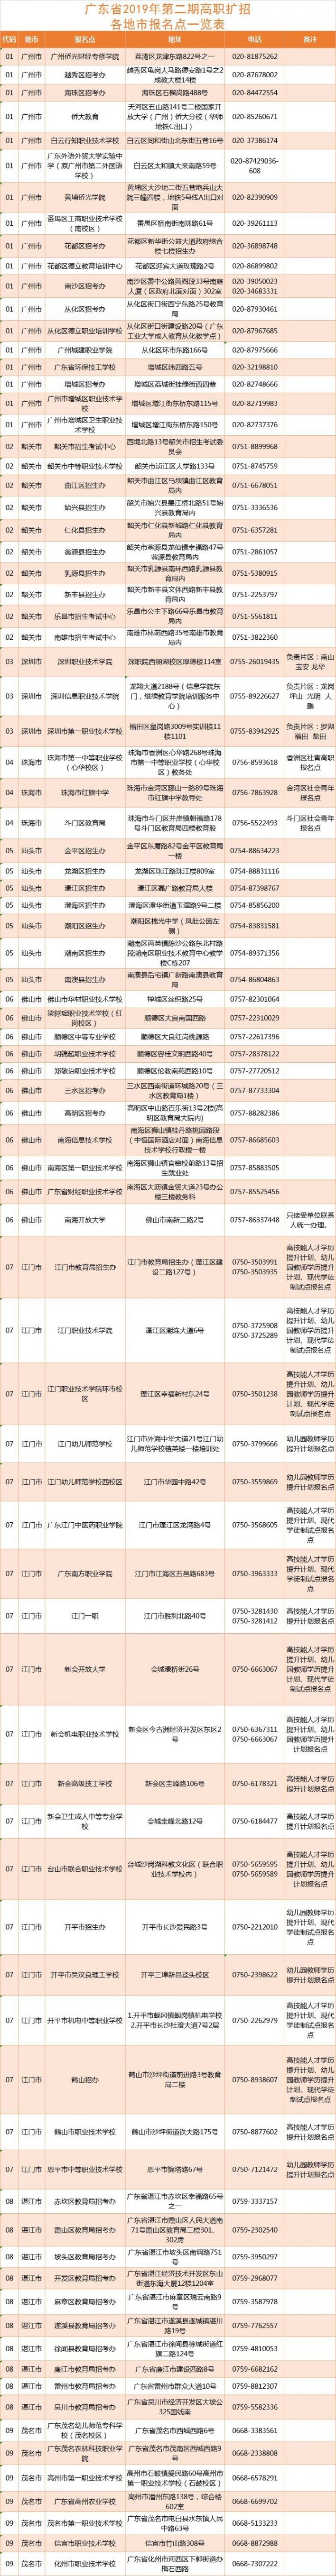 广东省2019年高职扩招各地市报名点一览表 深圳有三个